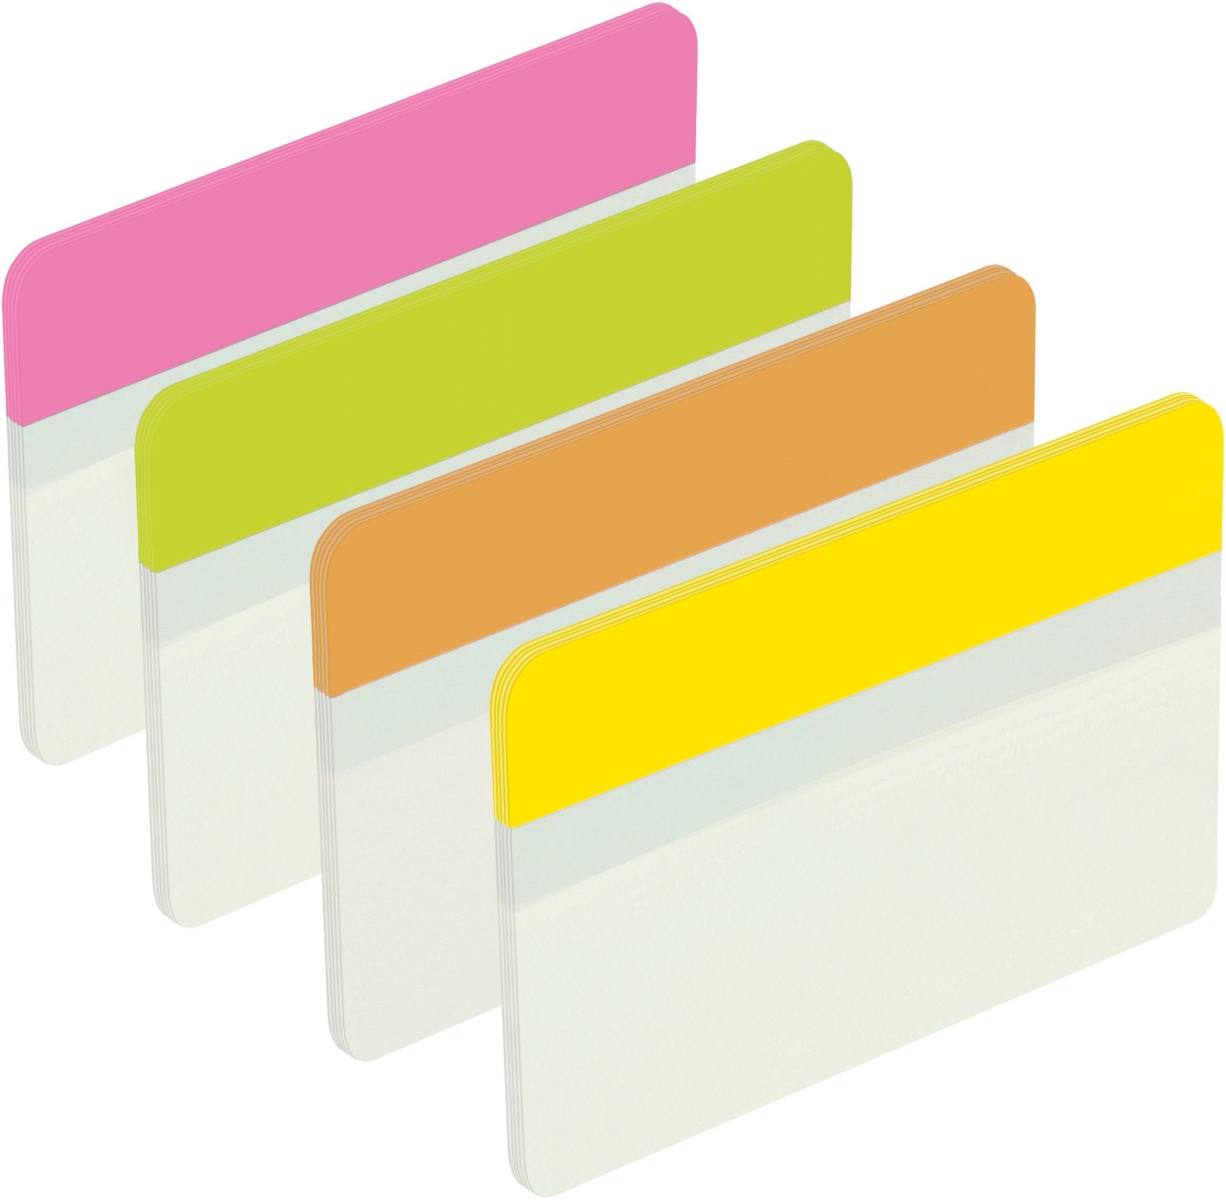 3M Post-it Index Strong 686-PLOY, 50,8 mm x 38 mm, gelb, grün, orange, pink, 4 x 6 Haftstreifen